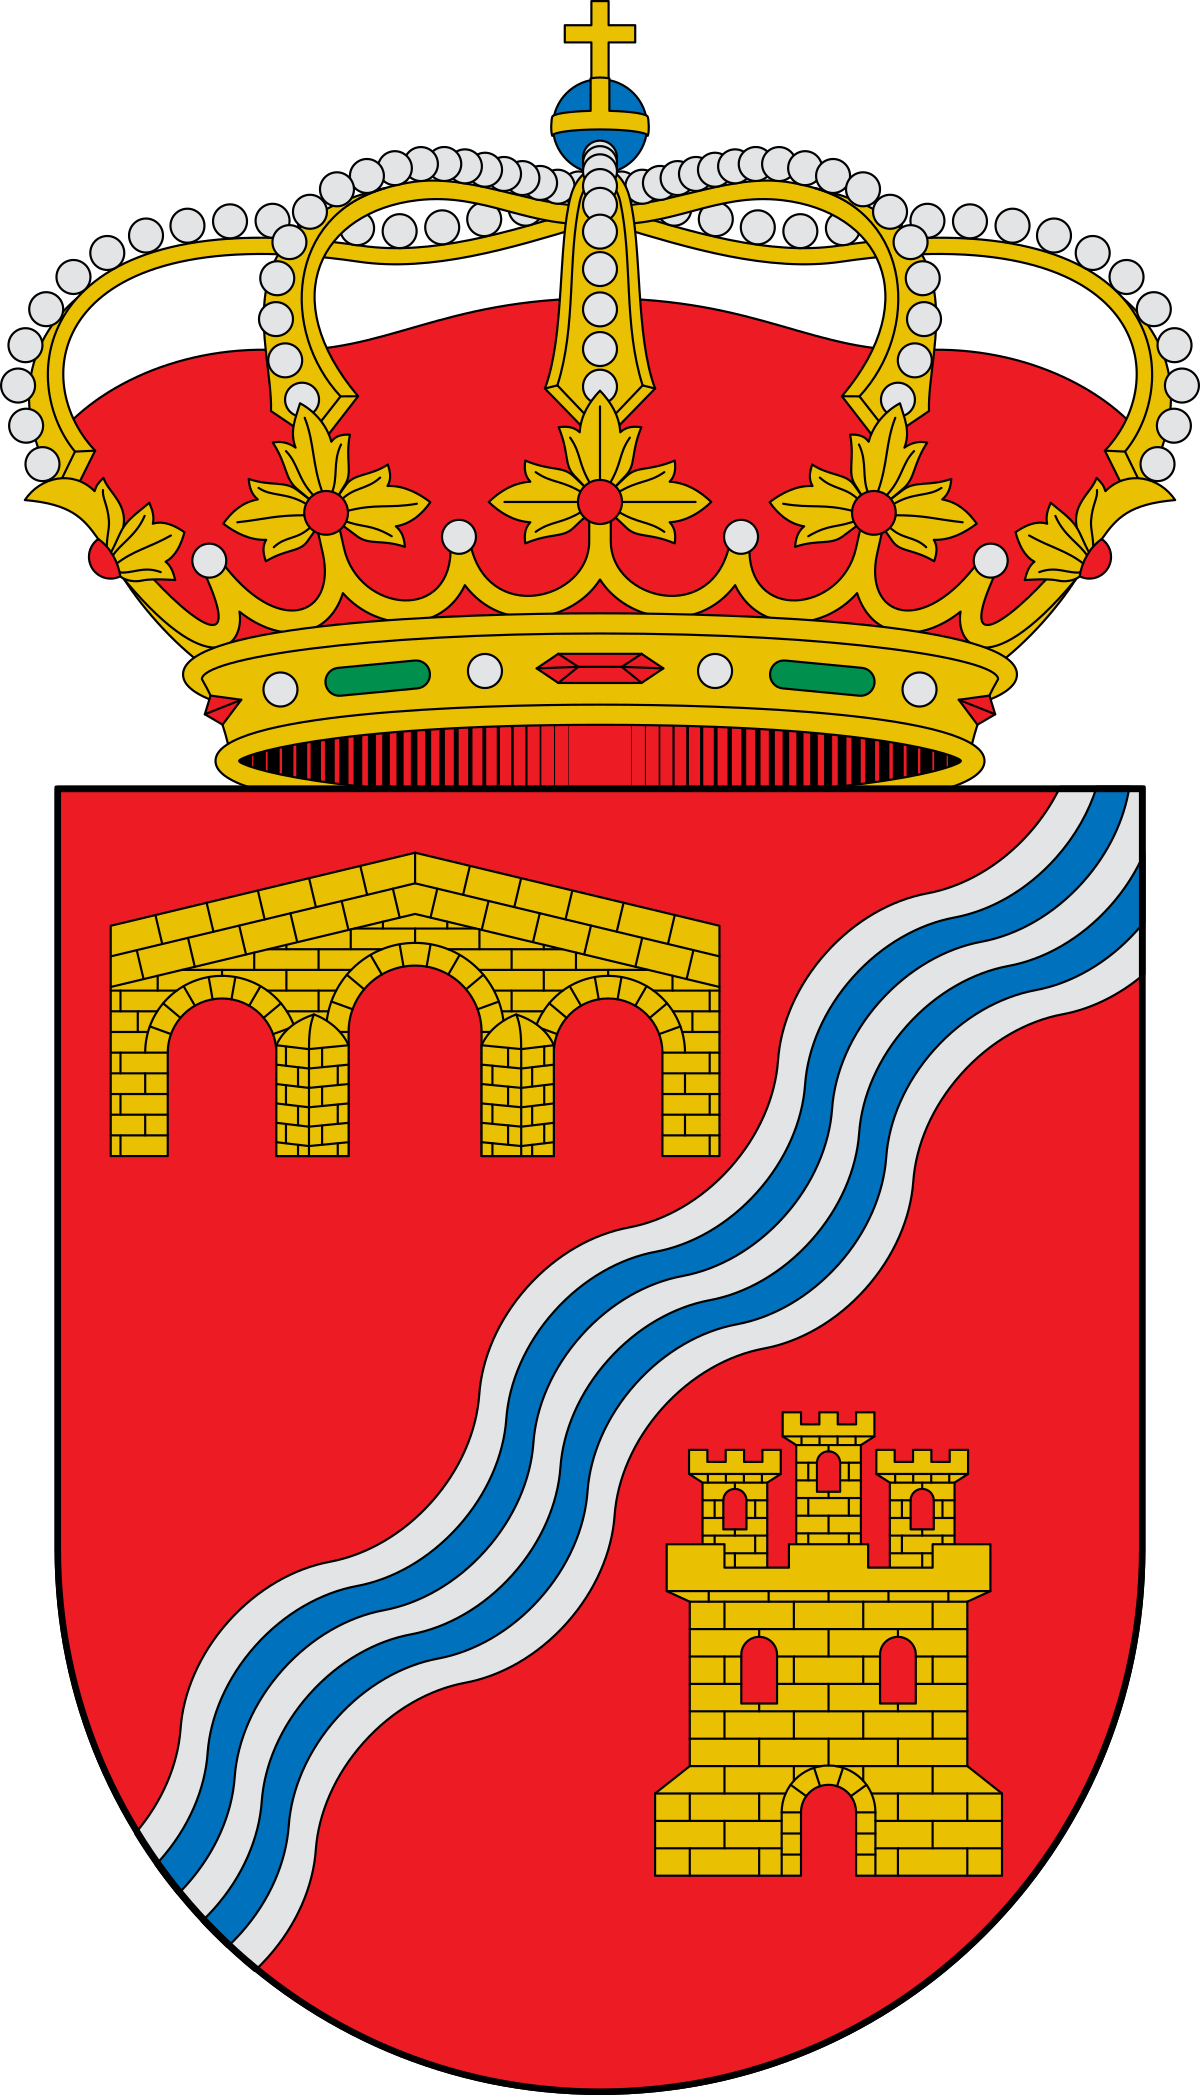 Escudo_de_Alcantud_(Cuenca).svg